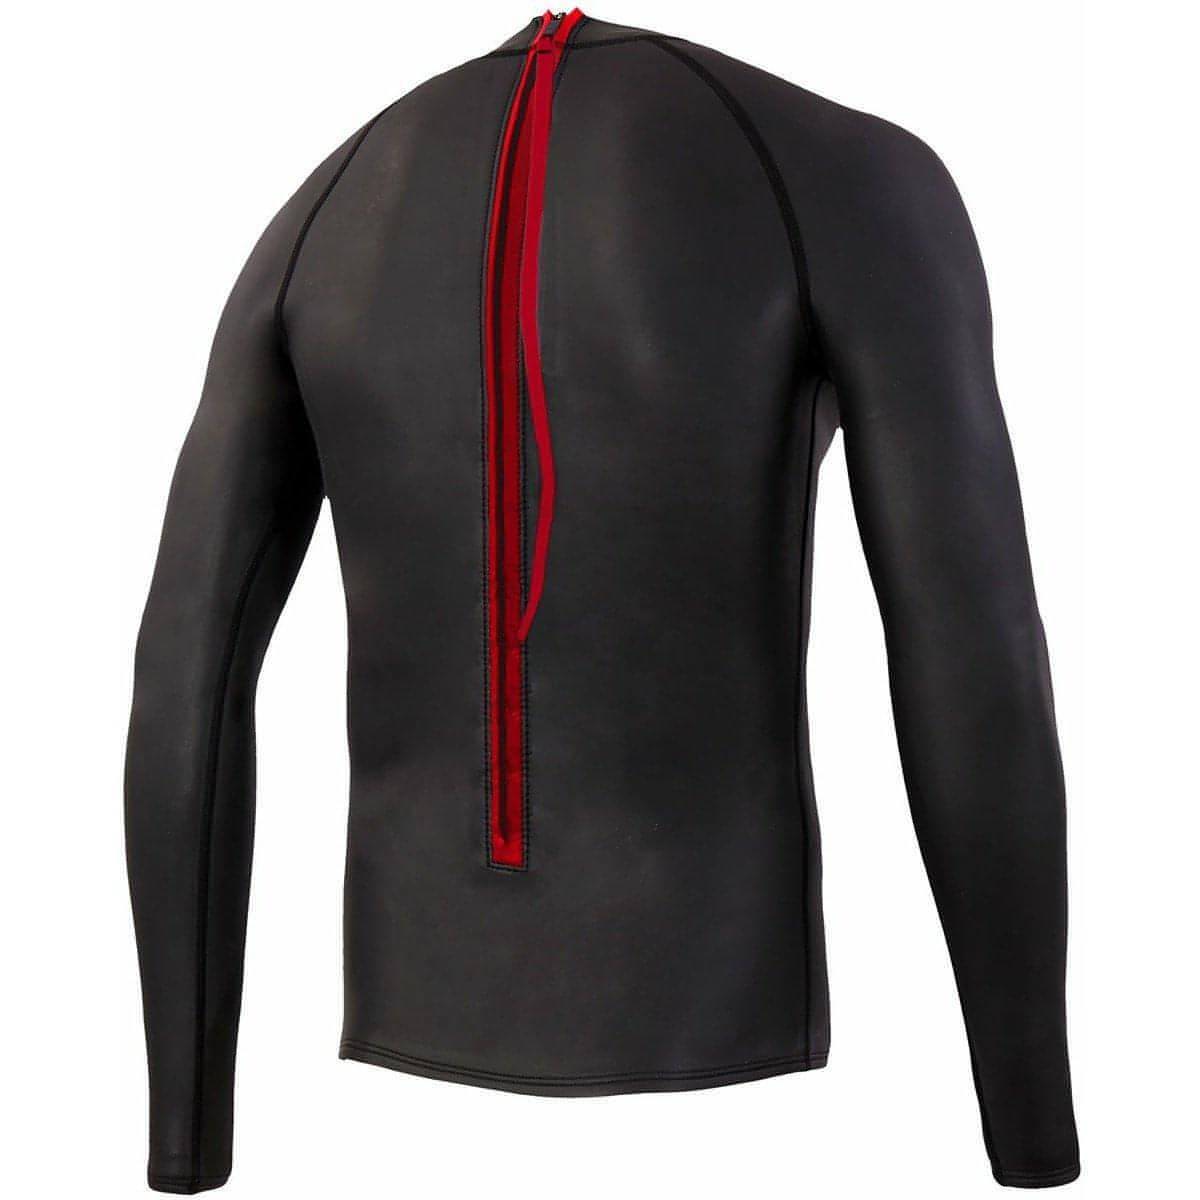 Zone3 Neoprene Long Sleeve Under Wetsuit Base Layer - Black - Start Fitness